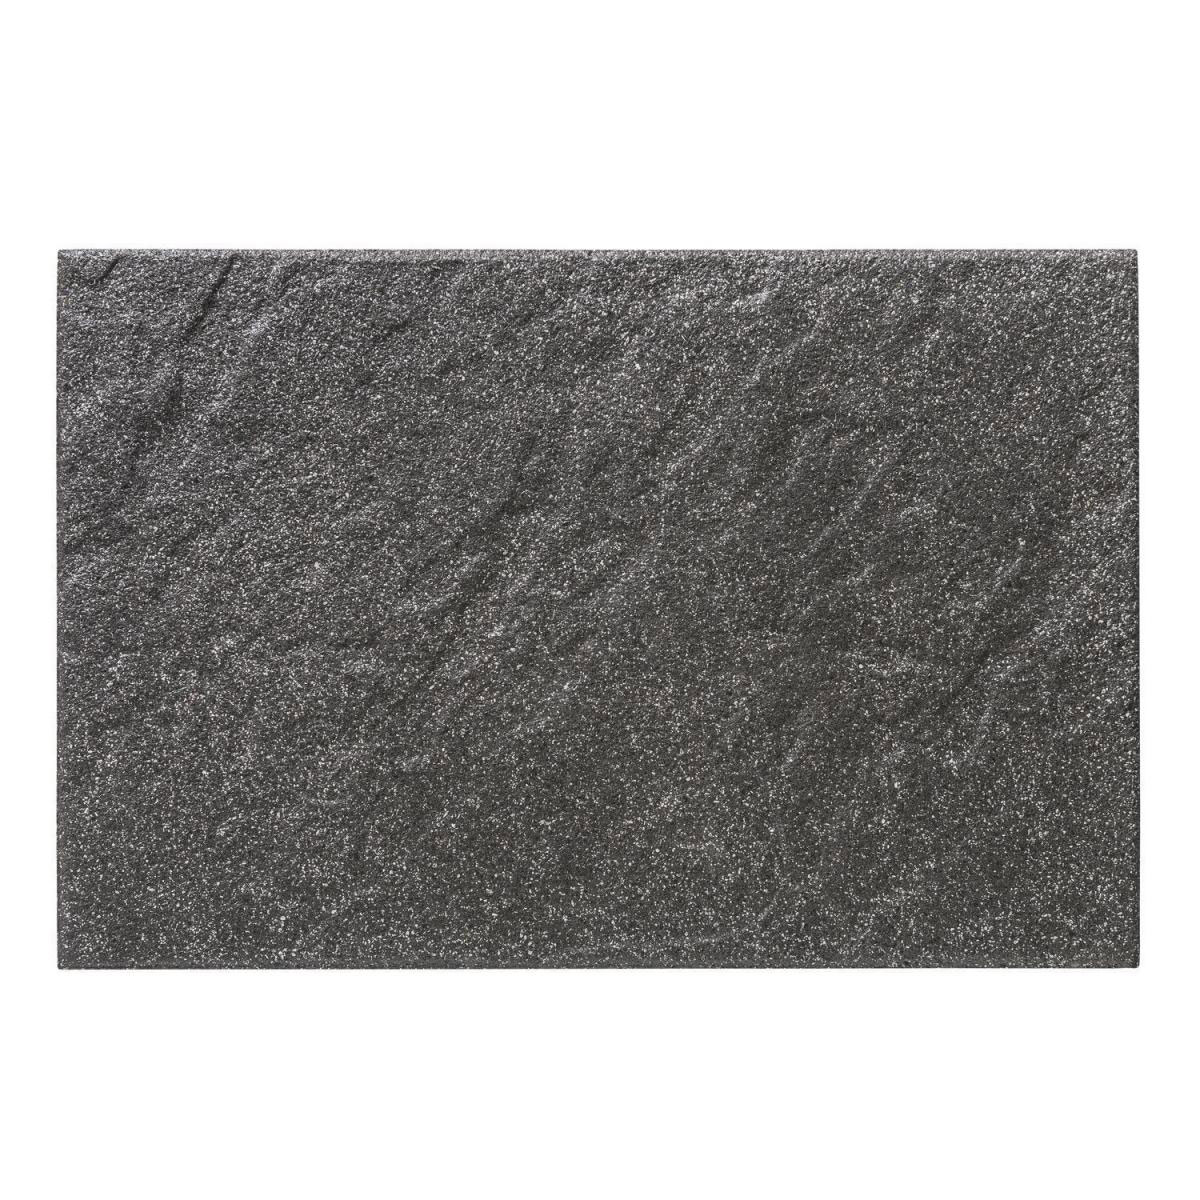 Diephaus Terrassenplatte No.1 Structure 60 x 40 x 4 cm Basalt, schwarz, 60x40